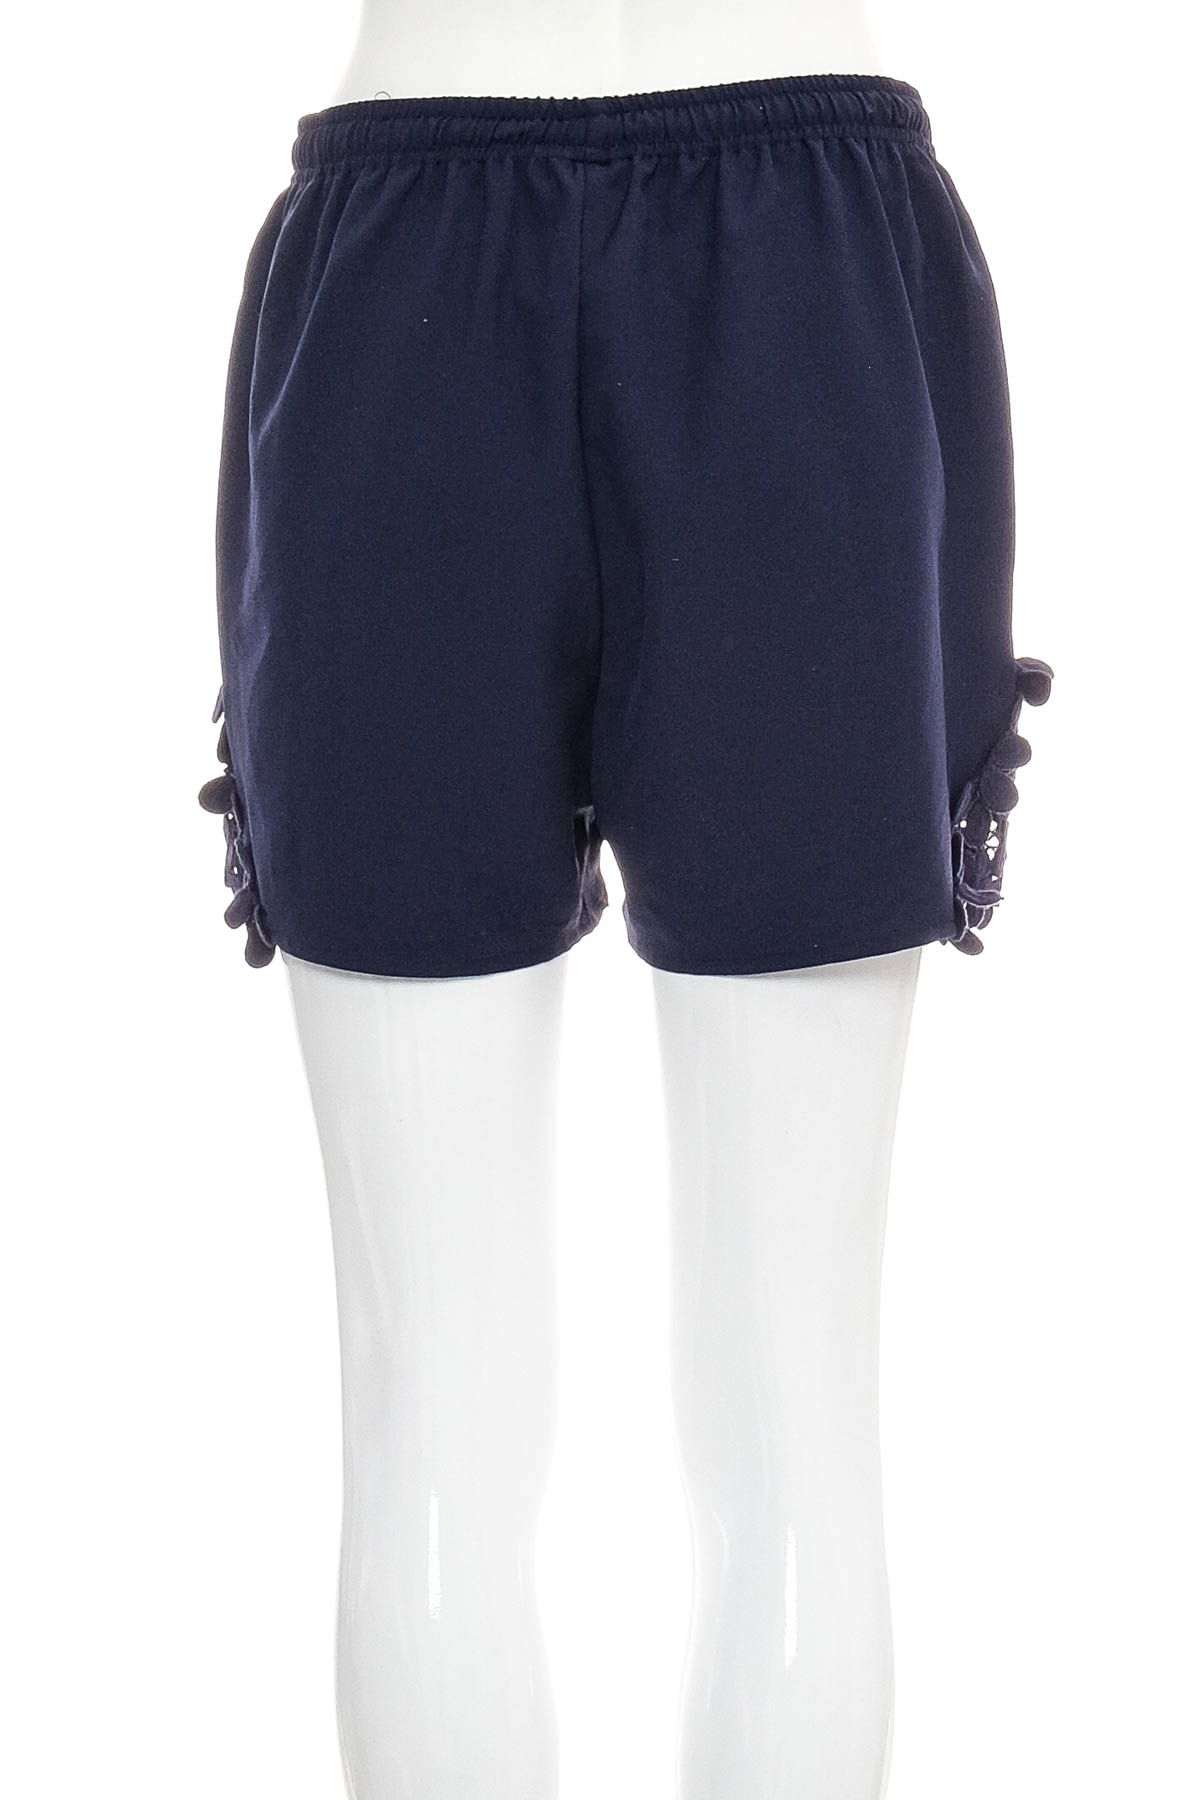 Female shorts - Casual LADIES - 1